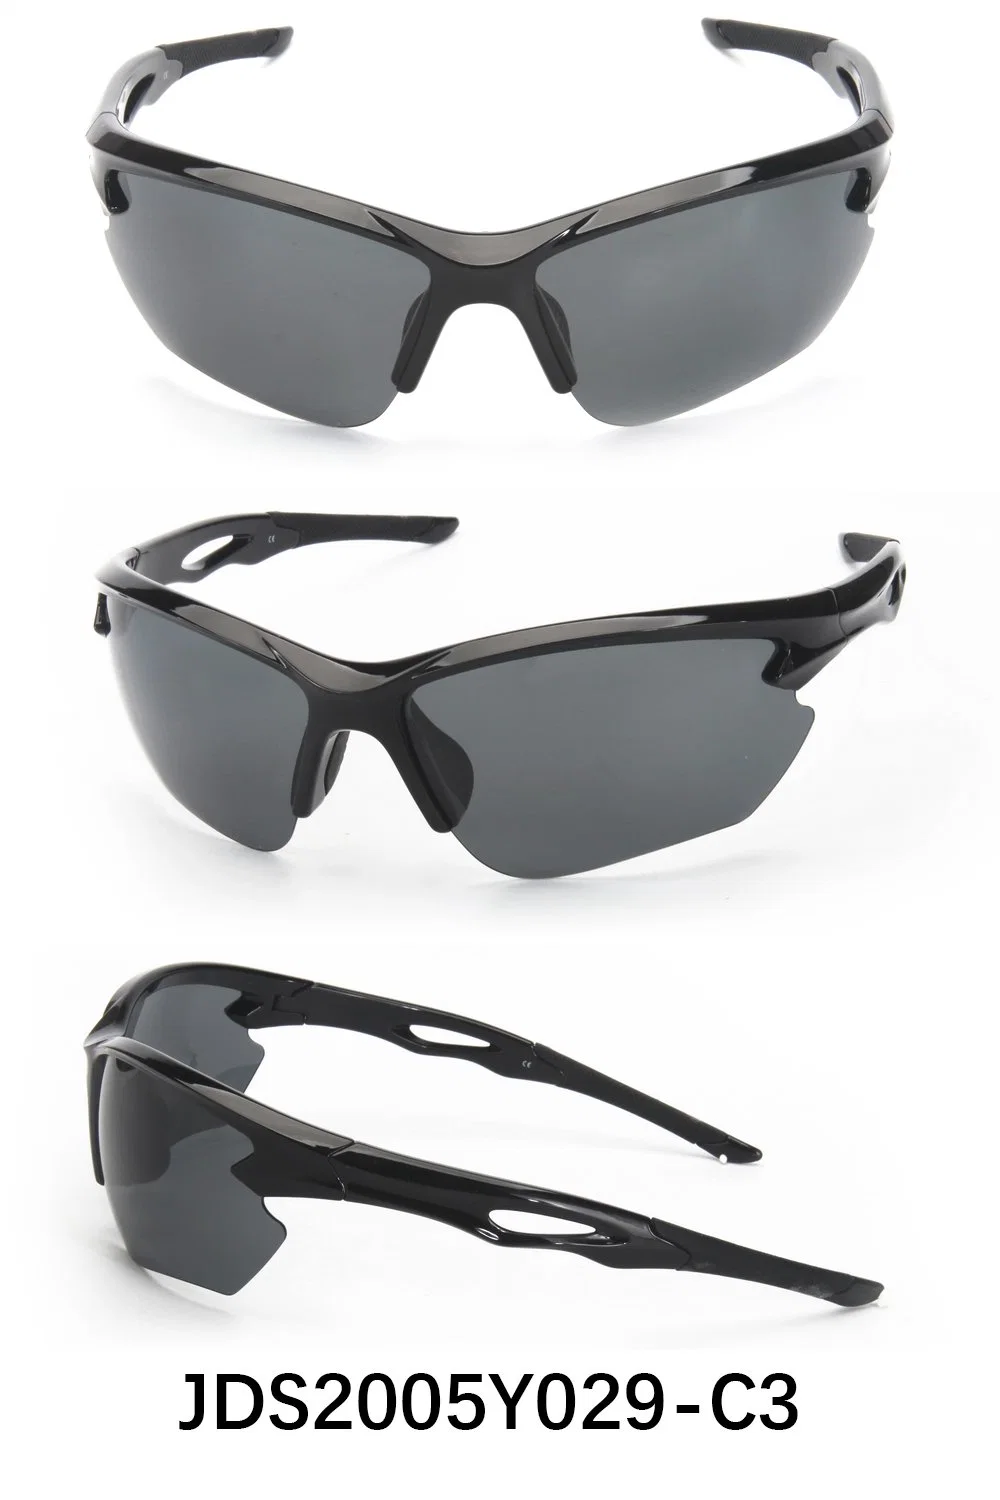 Direct Hot-Selling protección UV400 Seguridad gafas Gafas de sol deportivas Ciclismo Bicicleta de Montaña de Gafas Hombre Mujer Unisex